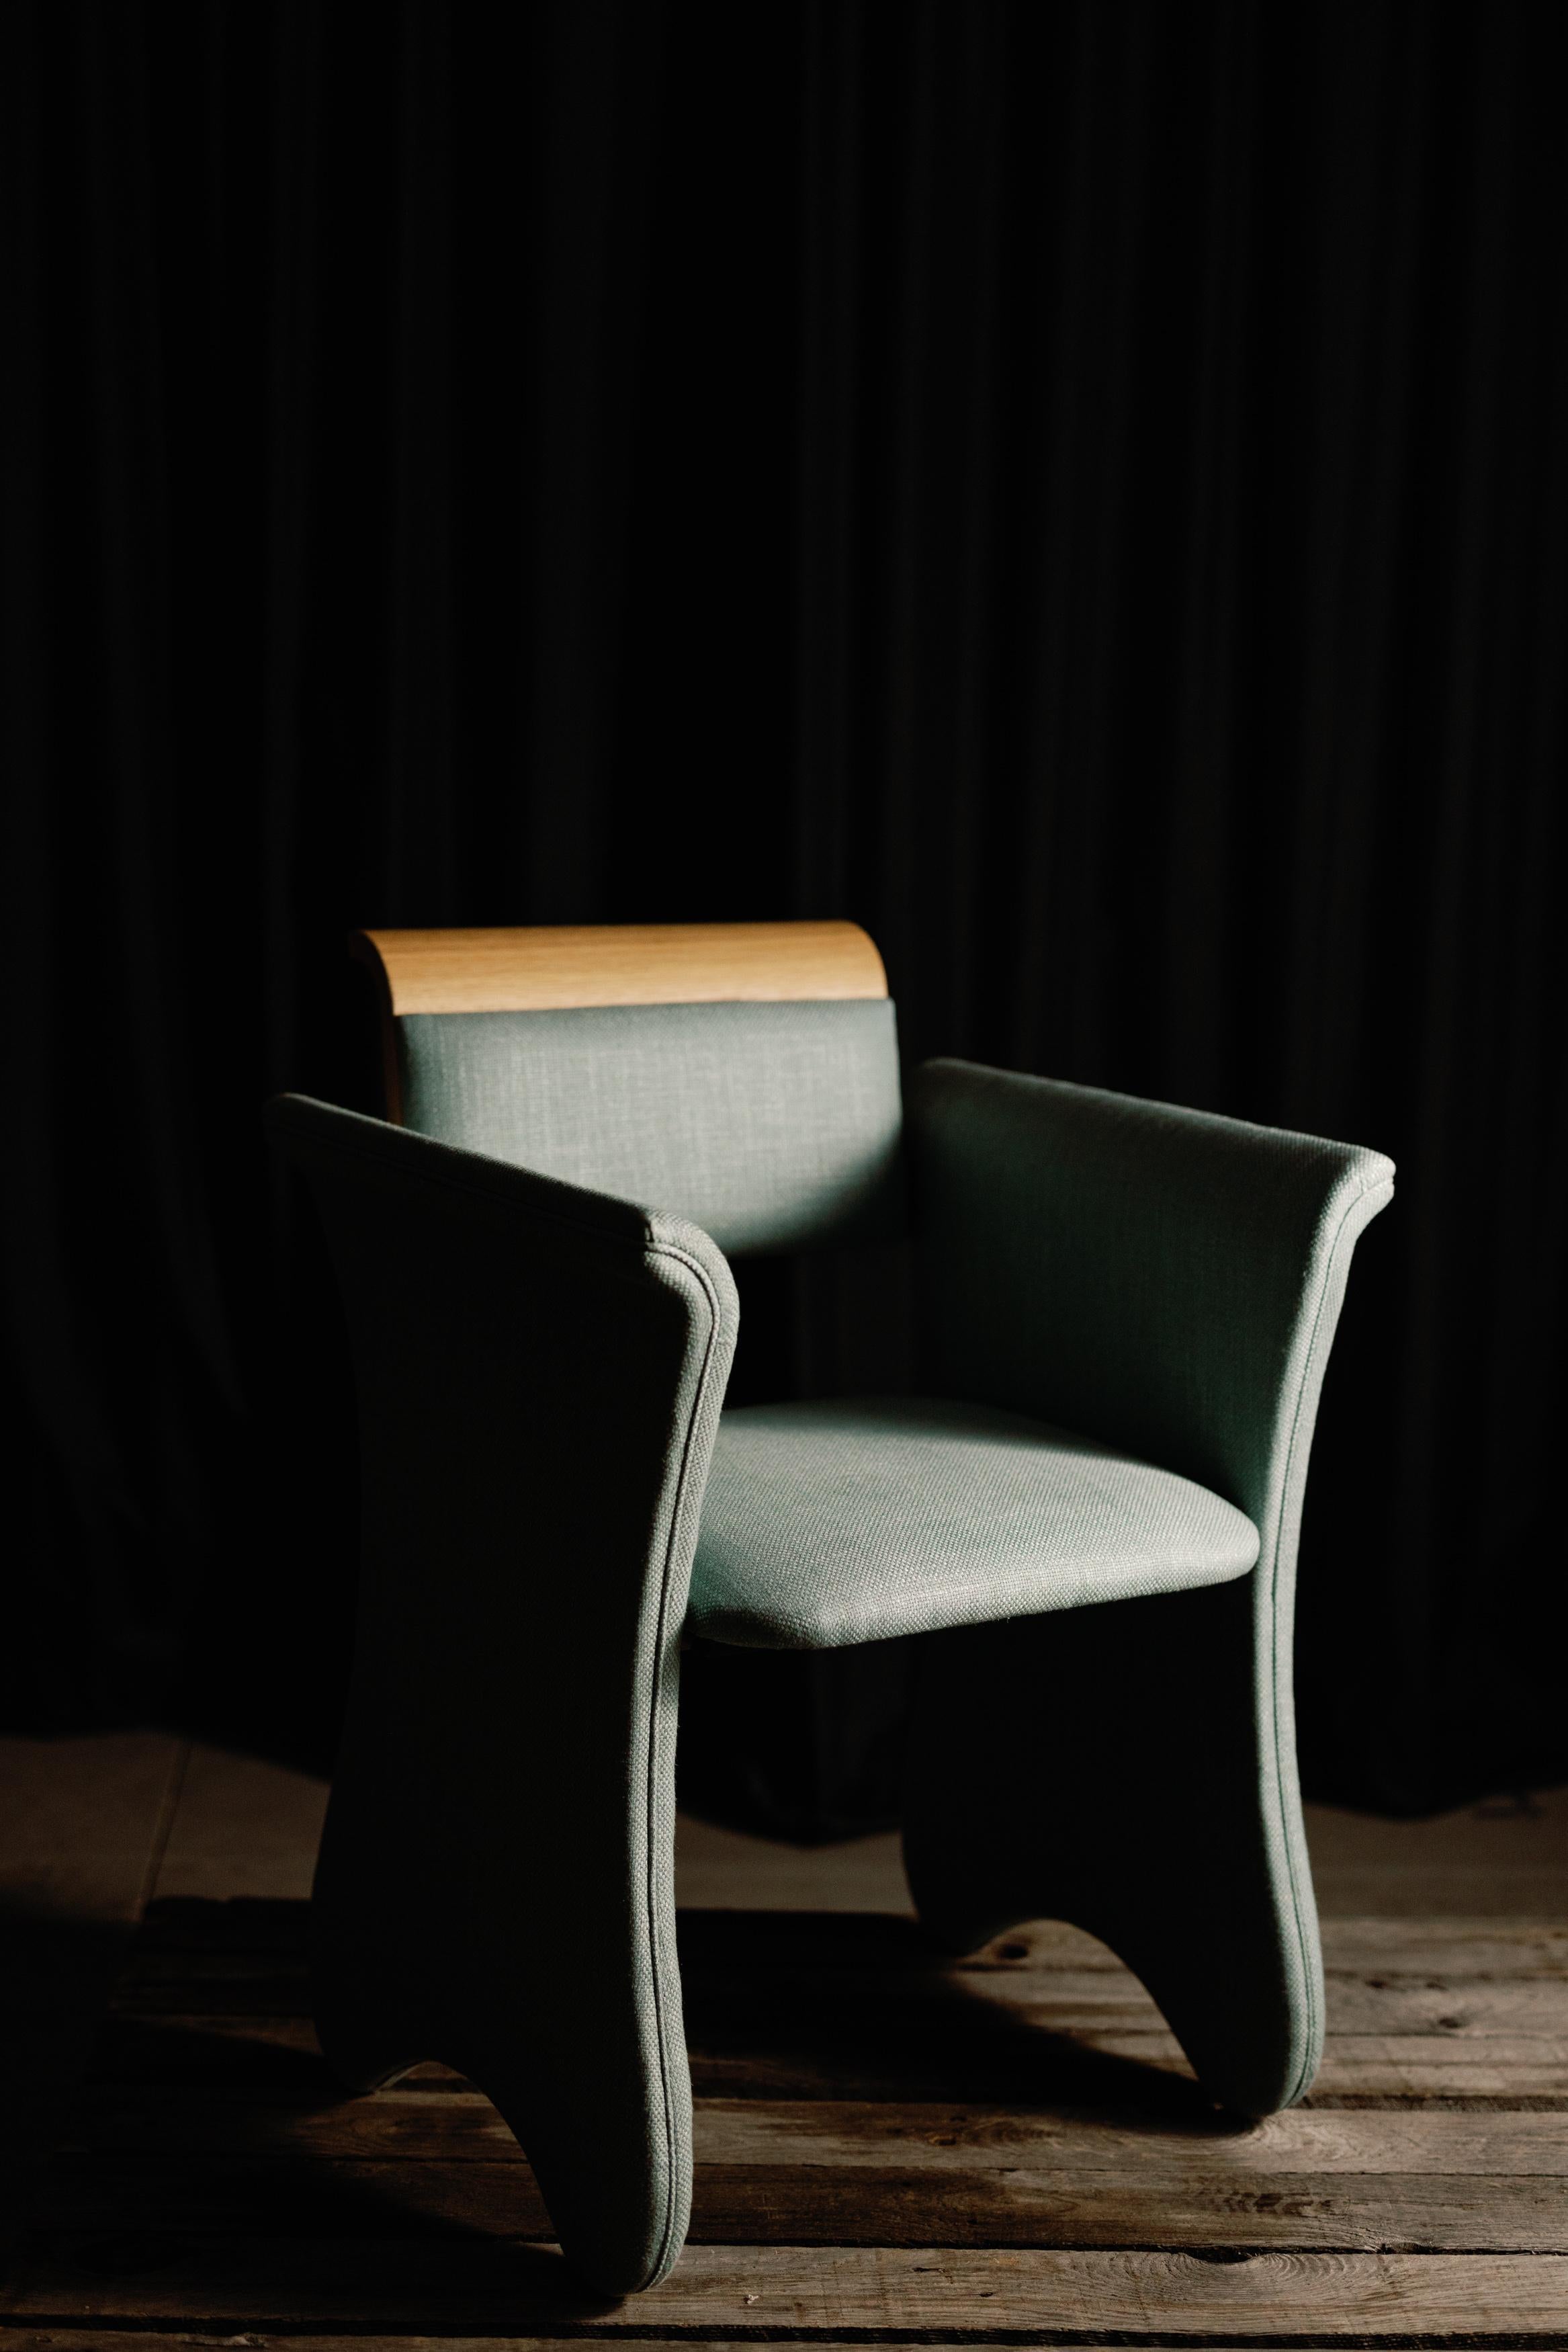 Chaise intemporelle, Collection Contemporary, Fabriquée à la main au Portugal - Europe par Greenapple.

La chaise de bureau moderne Timeless a été conçue et fabriquée pour résister au passage du temps, pour accompagner toute une vie de croissance et